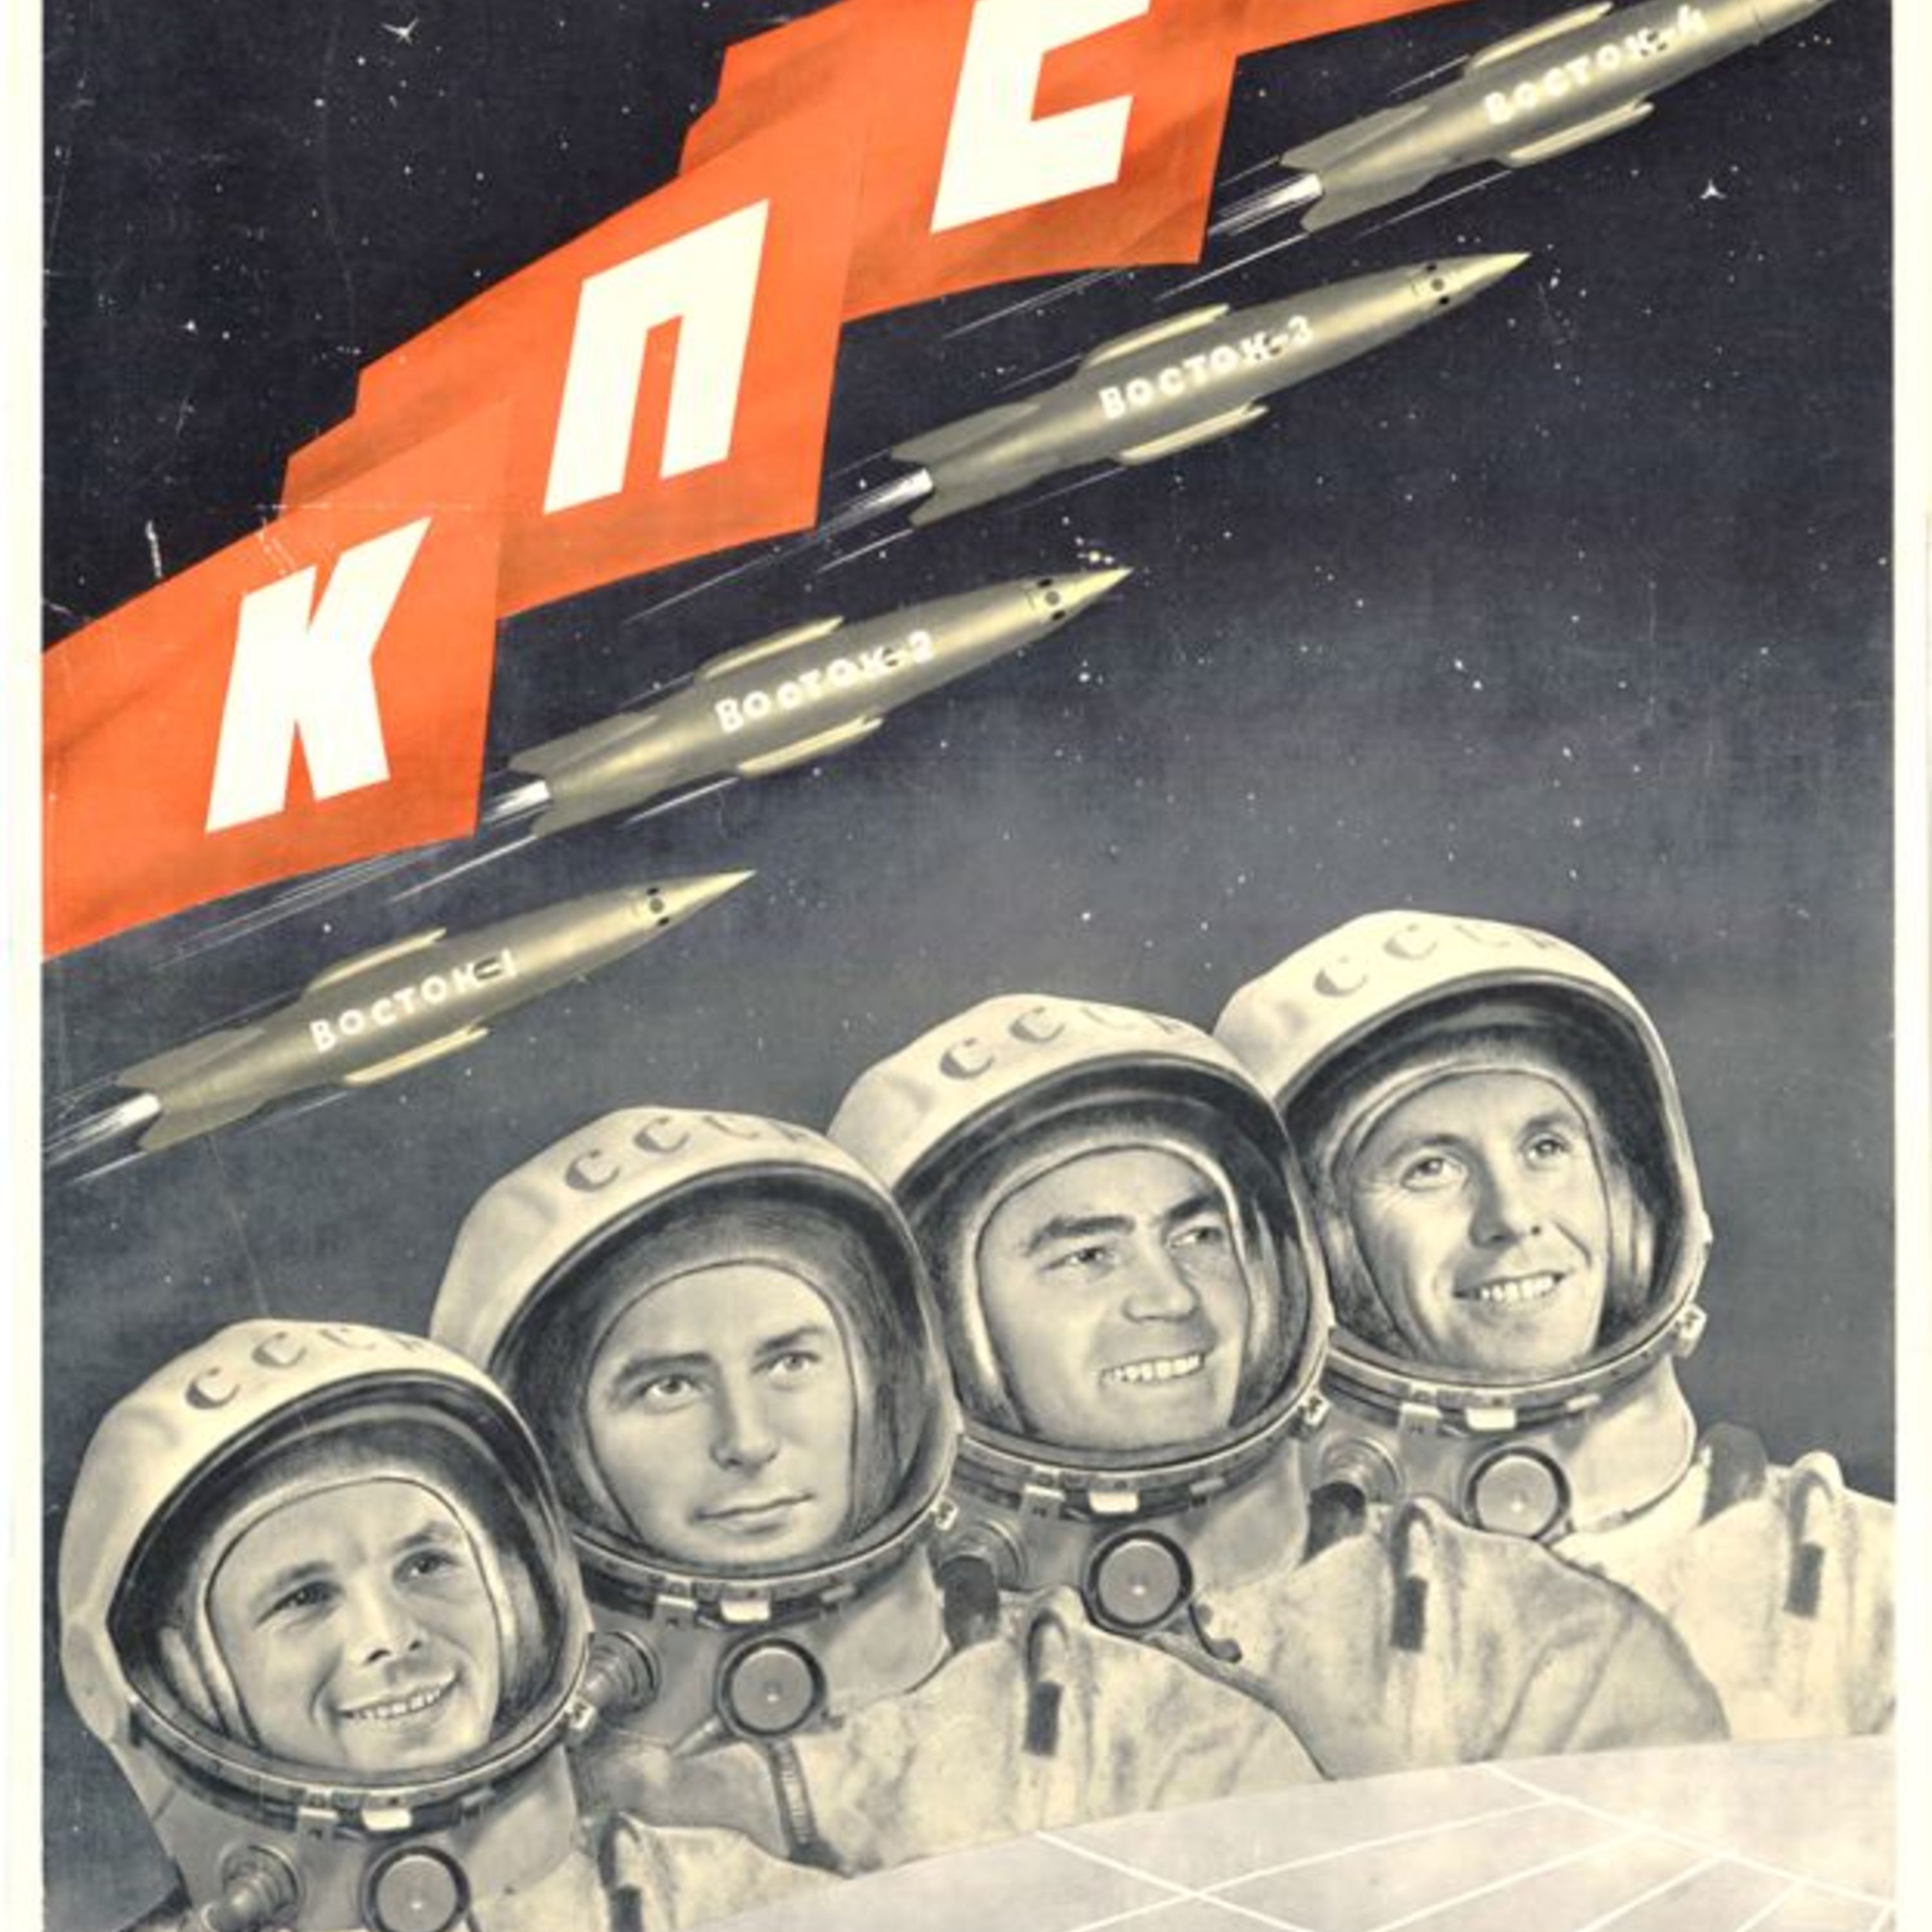 Space Race - Cosmonaut.jpeg